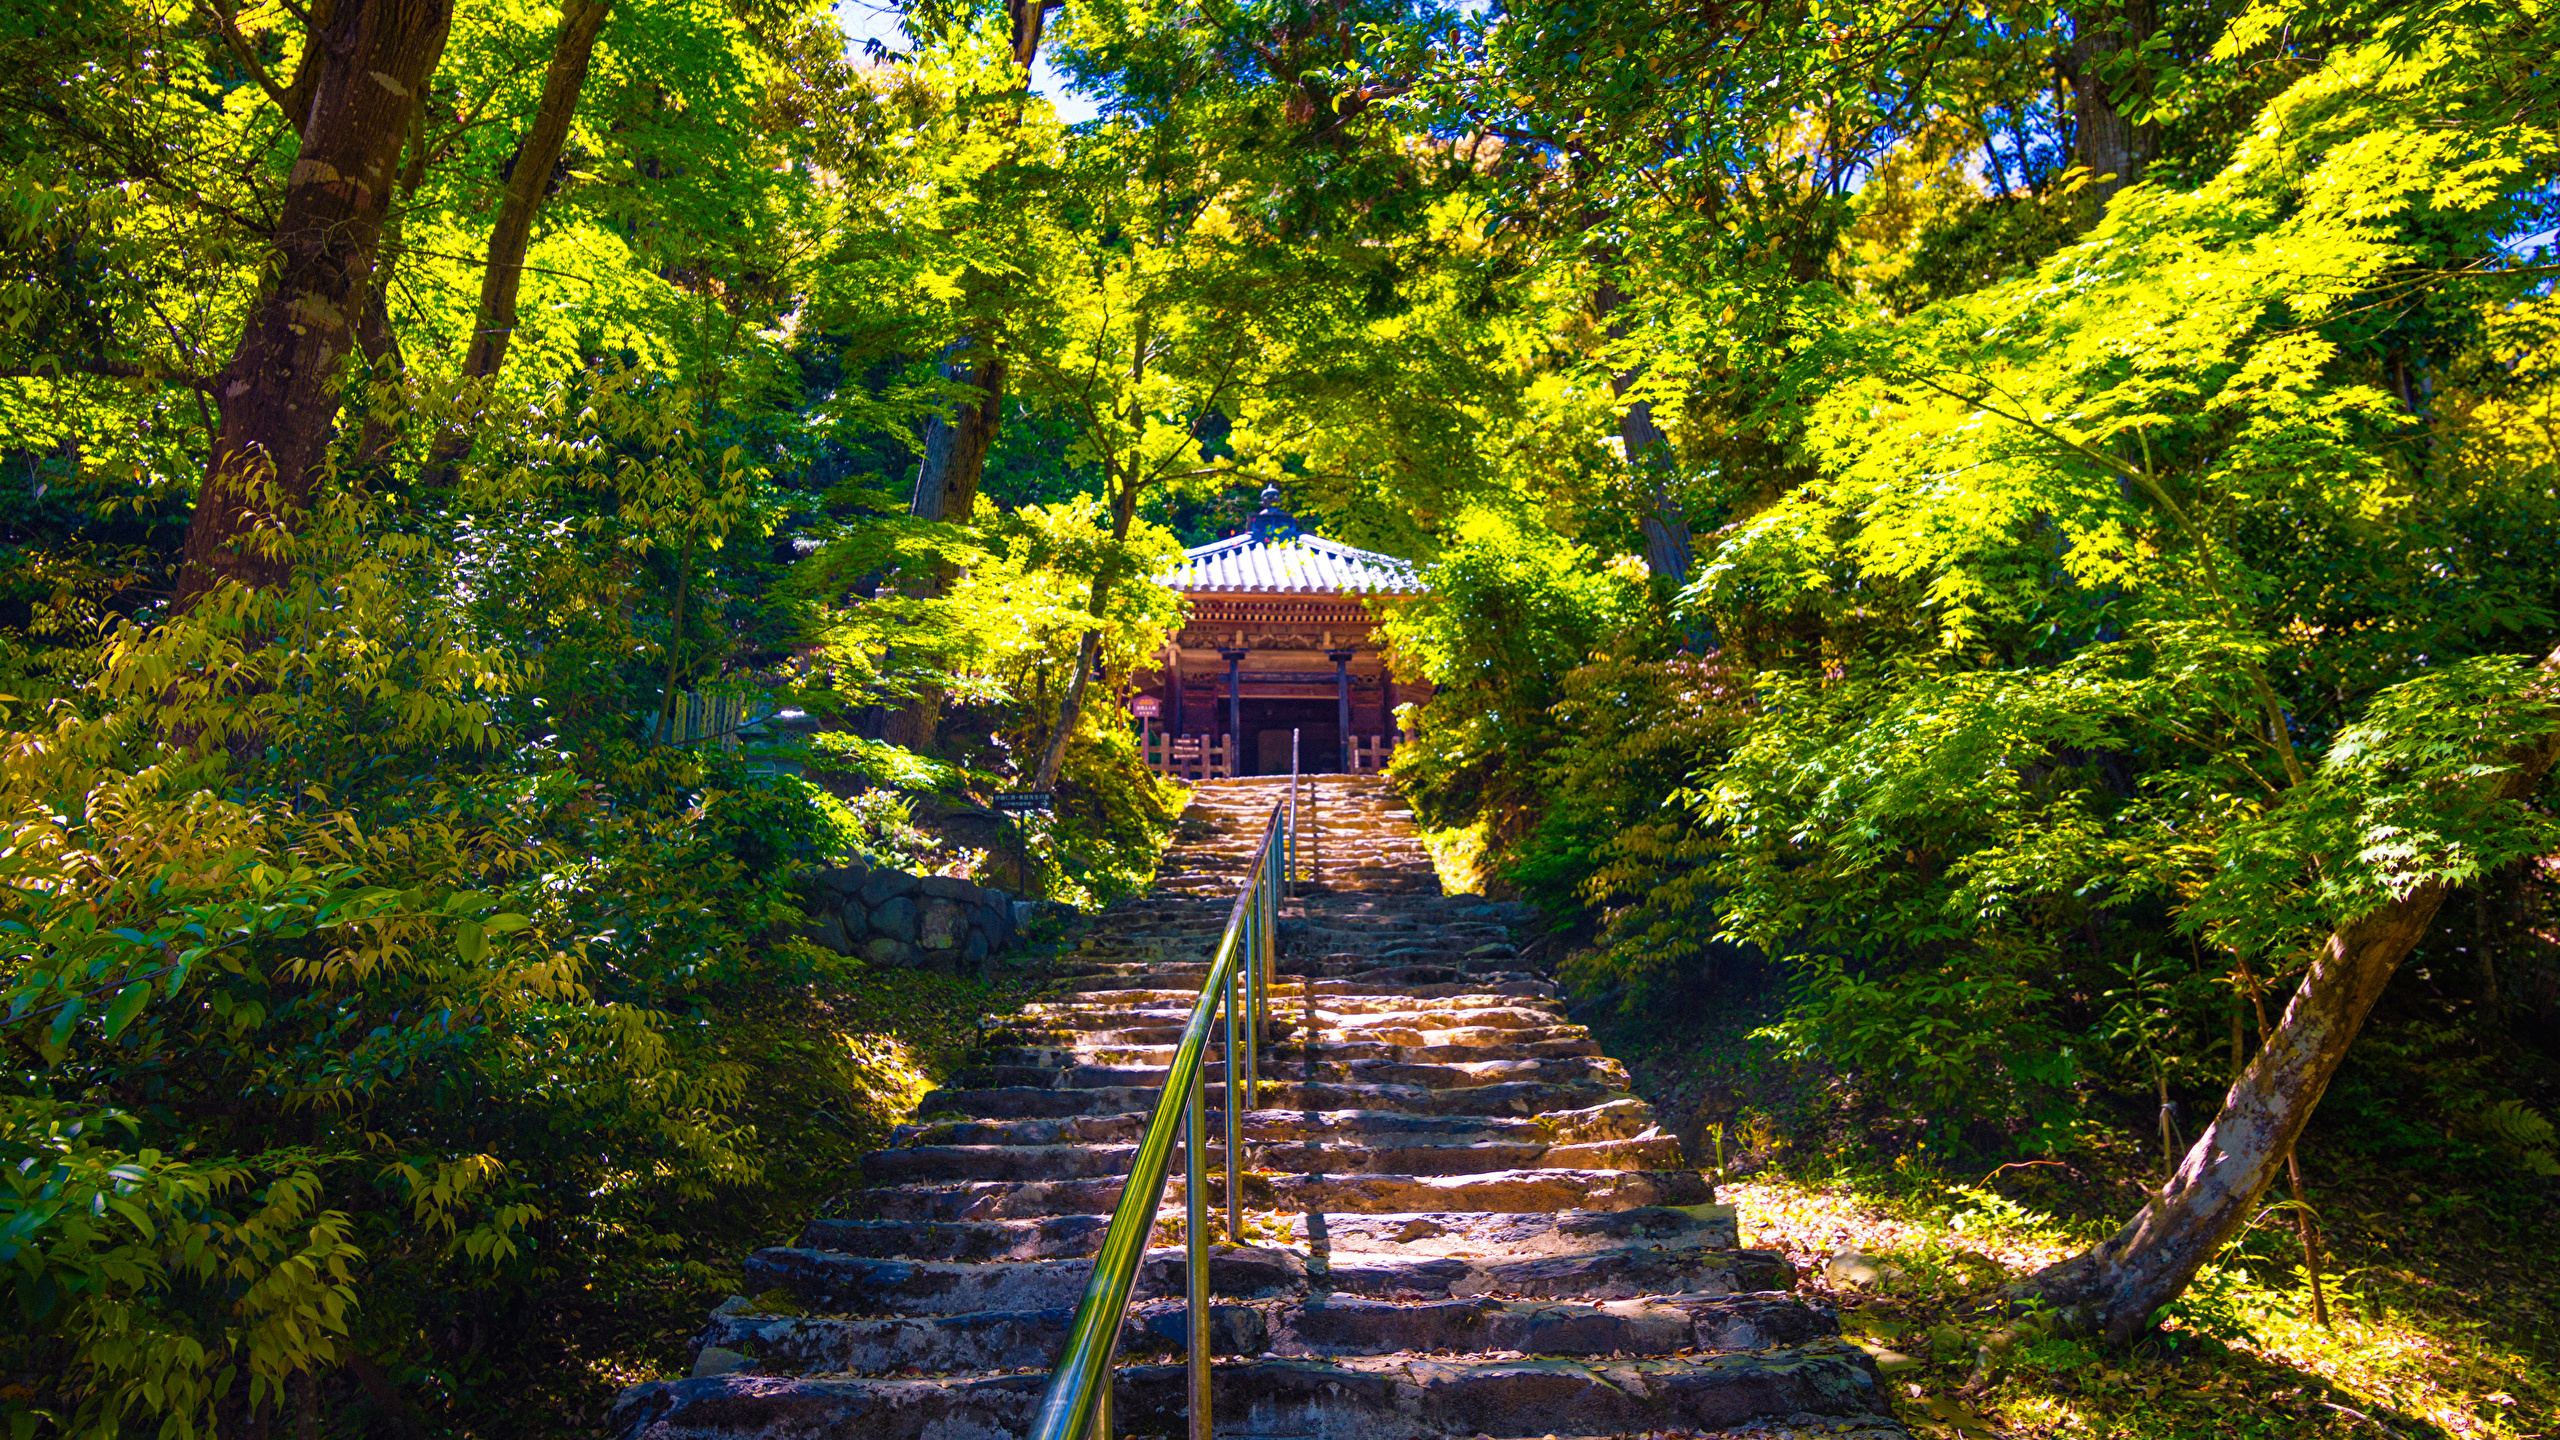 壁紙 2560x1440 京都市 日本 公园 Sagano 楼梯 灌木 树 大自然 下载 照片